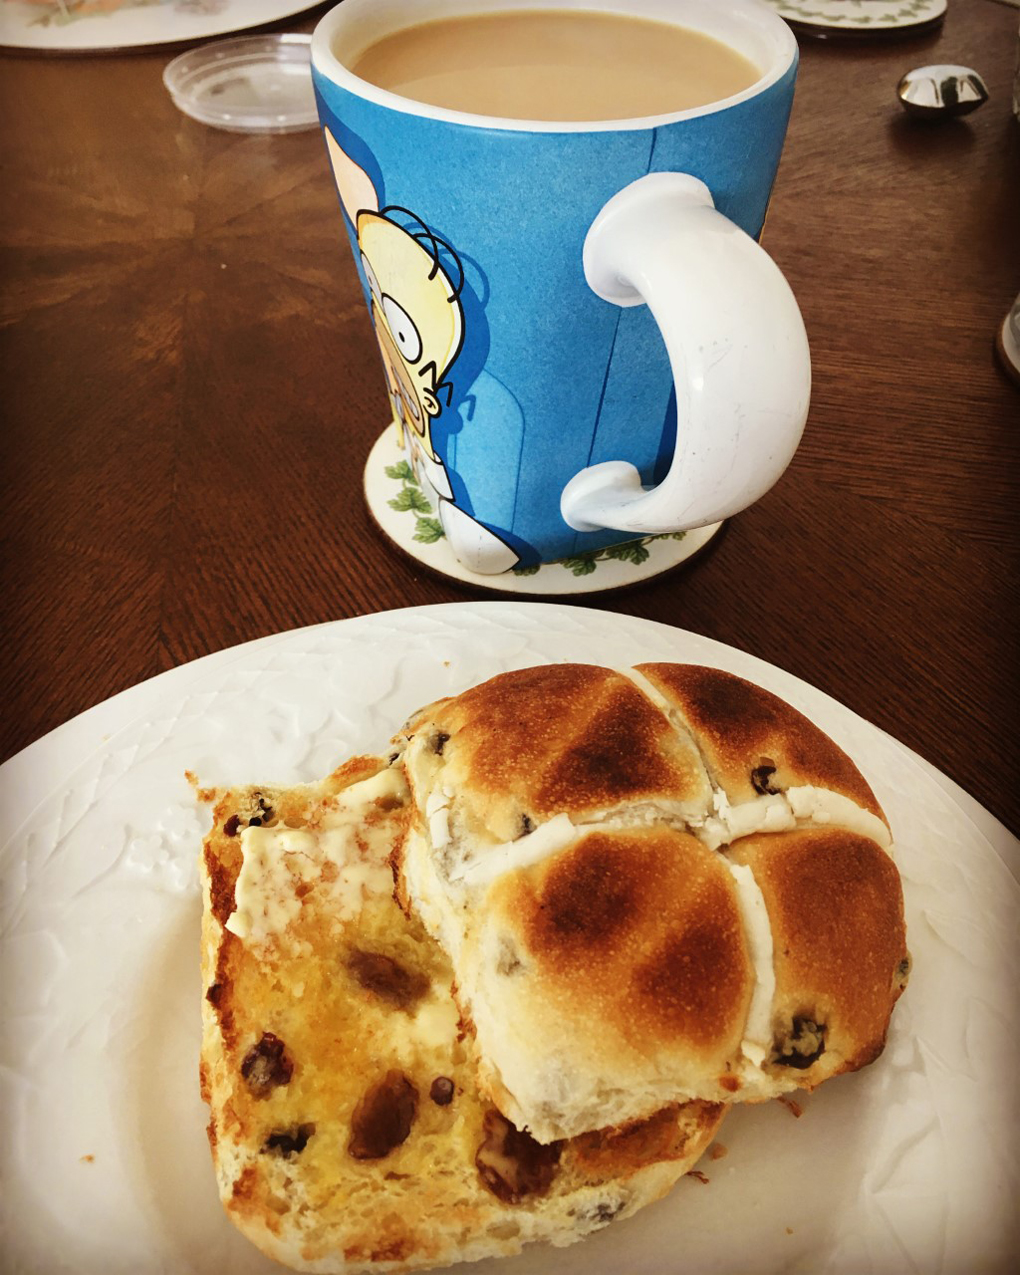 buttered hot cross bun and tea